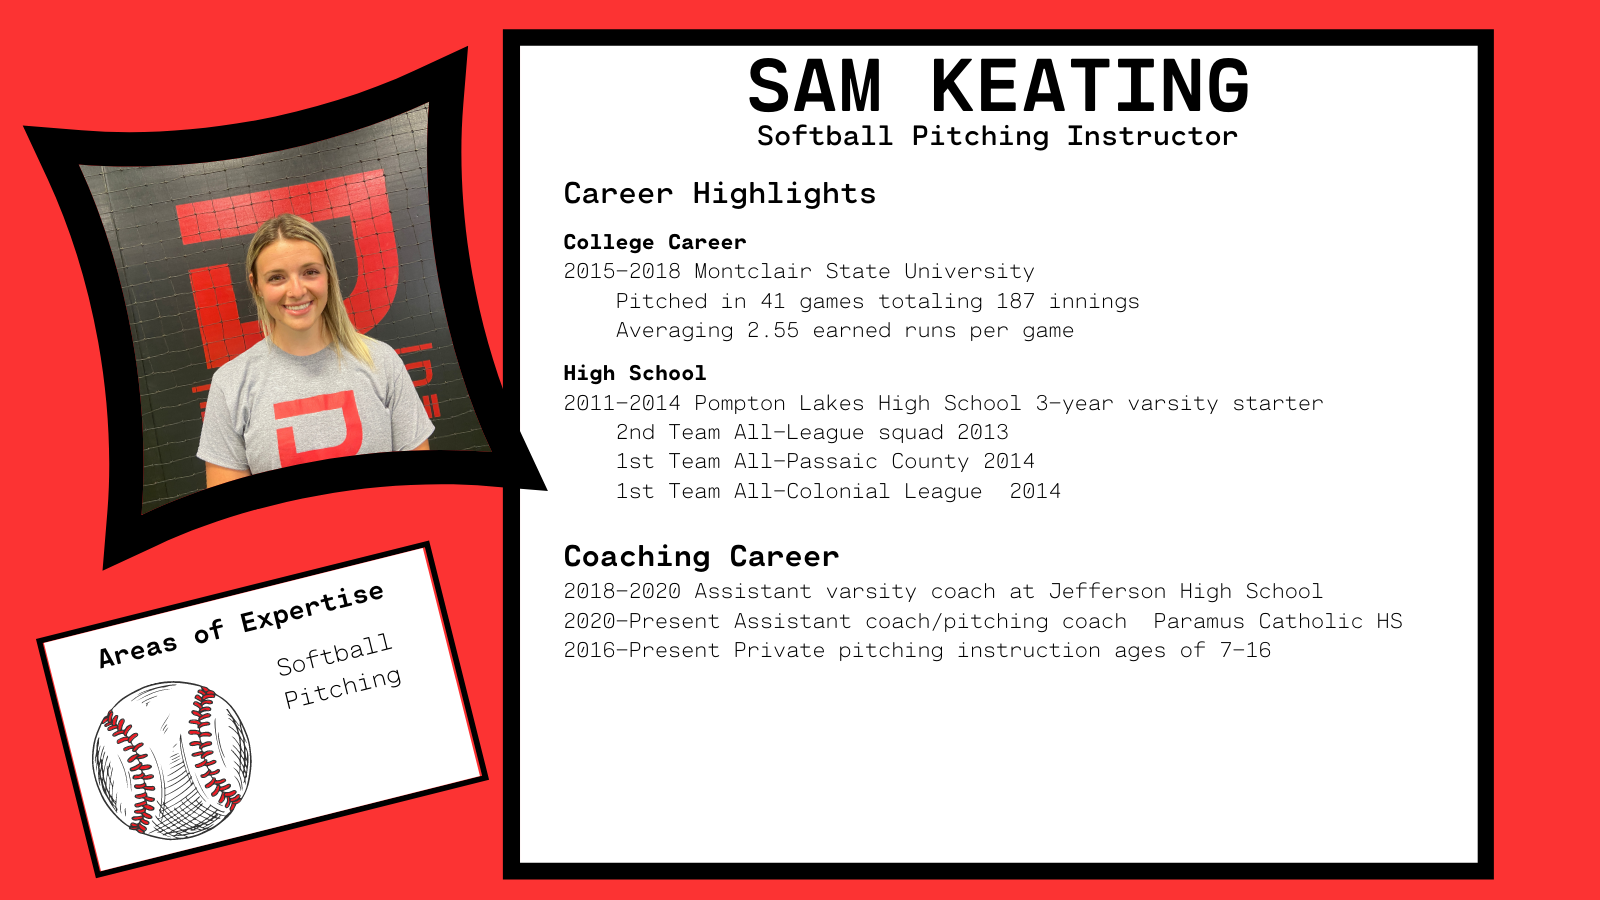 Sam Keating